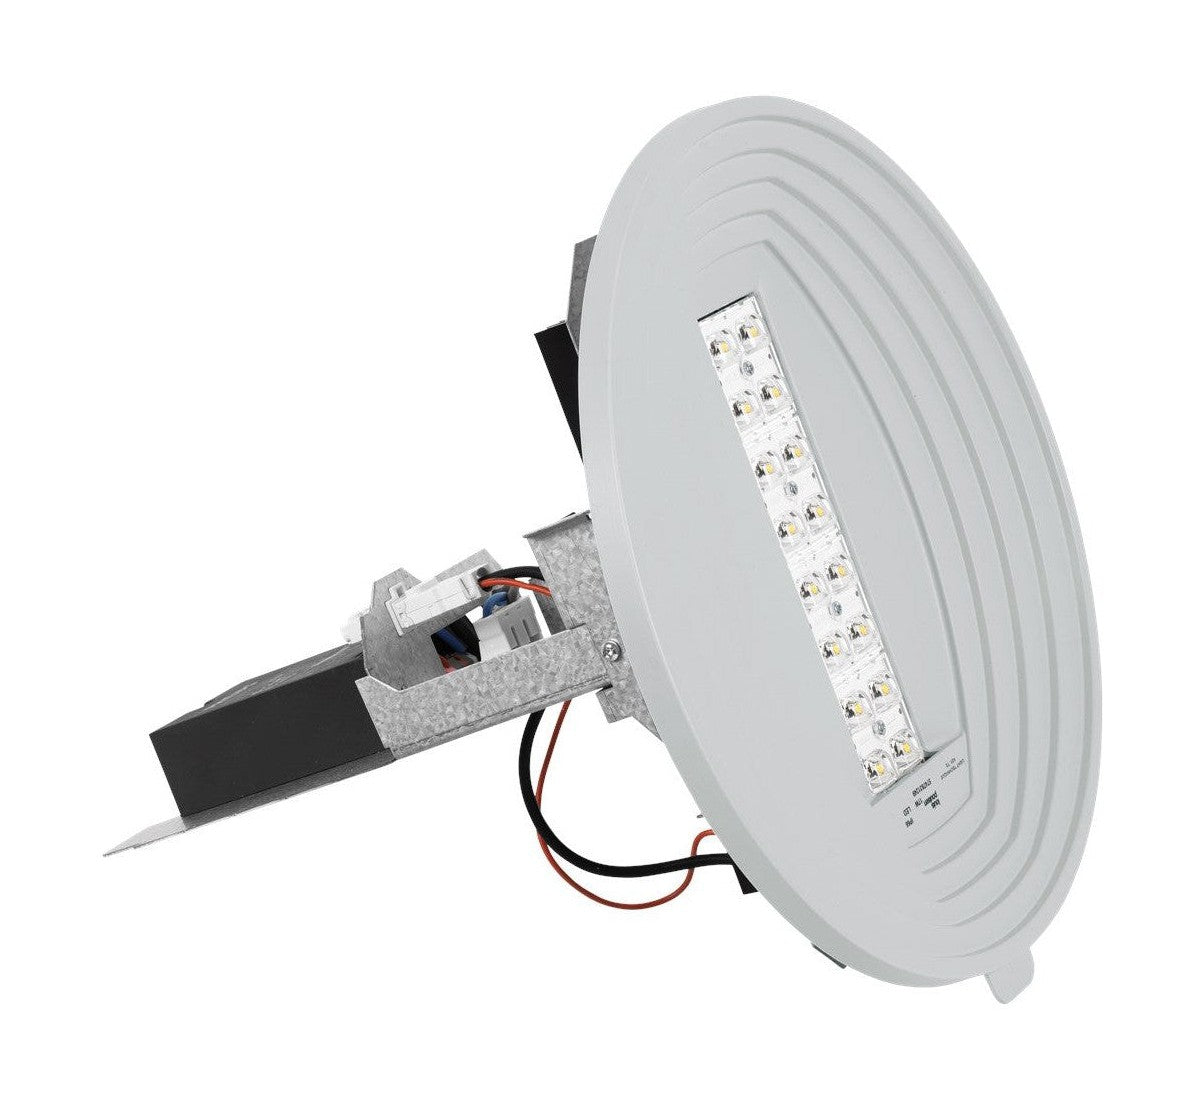 Kit de actualización de LED LED de Louis Poulsen LP 5851 Lumens, Clo